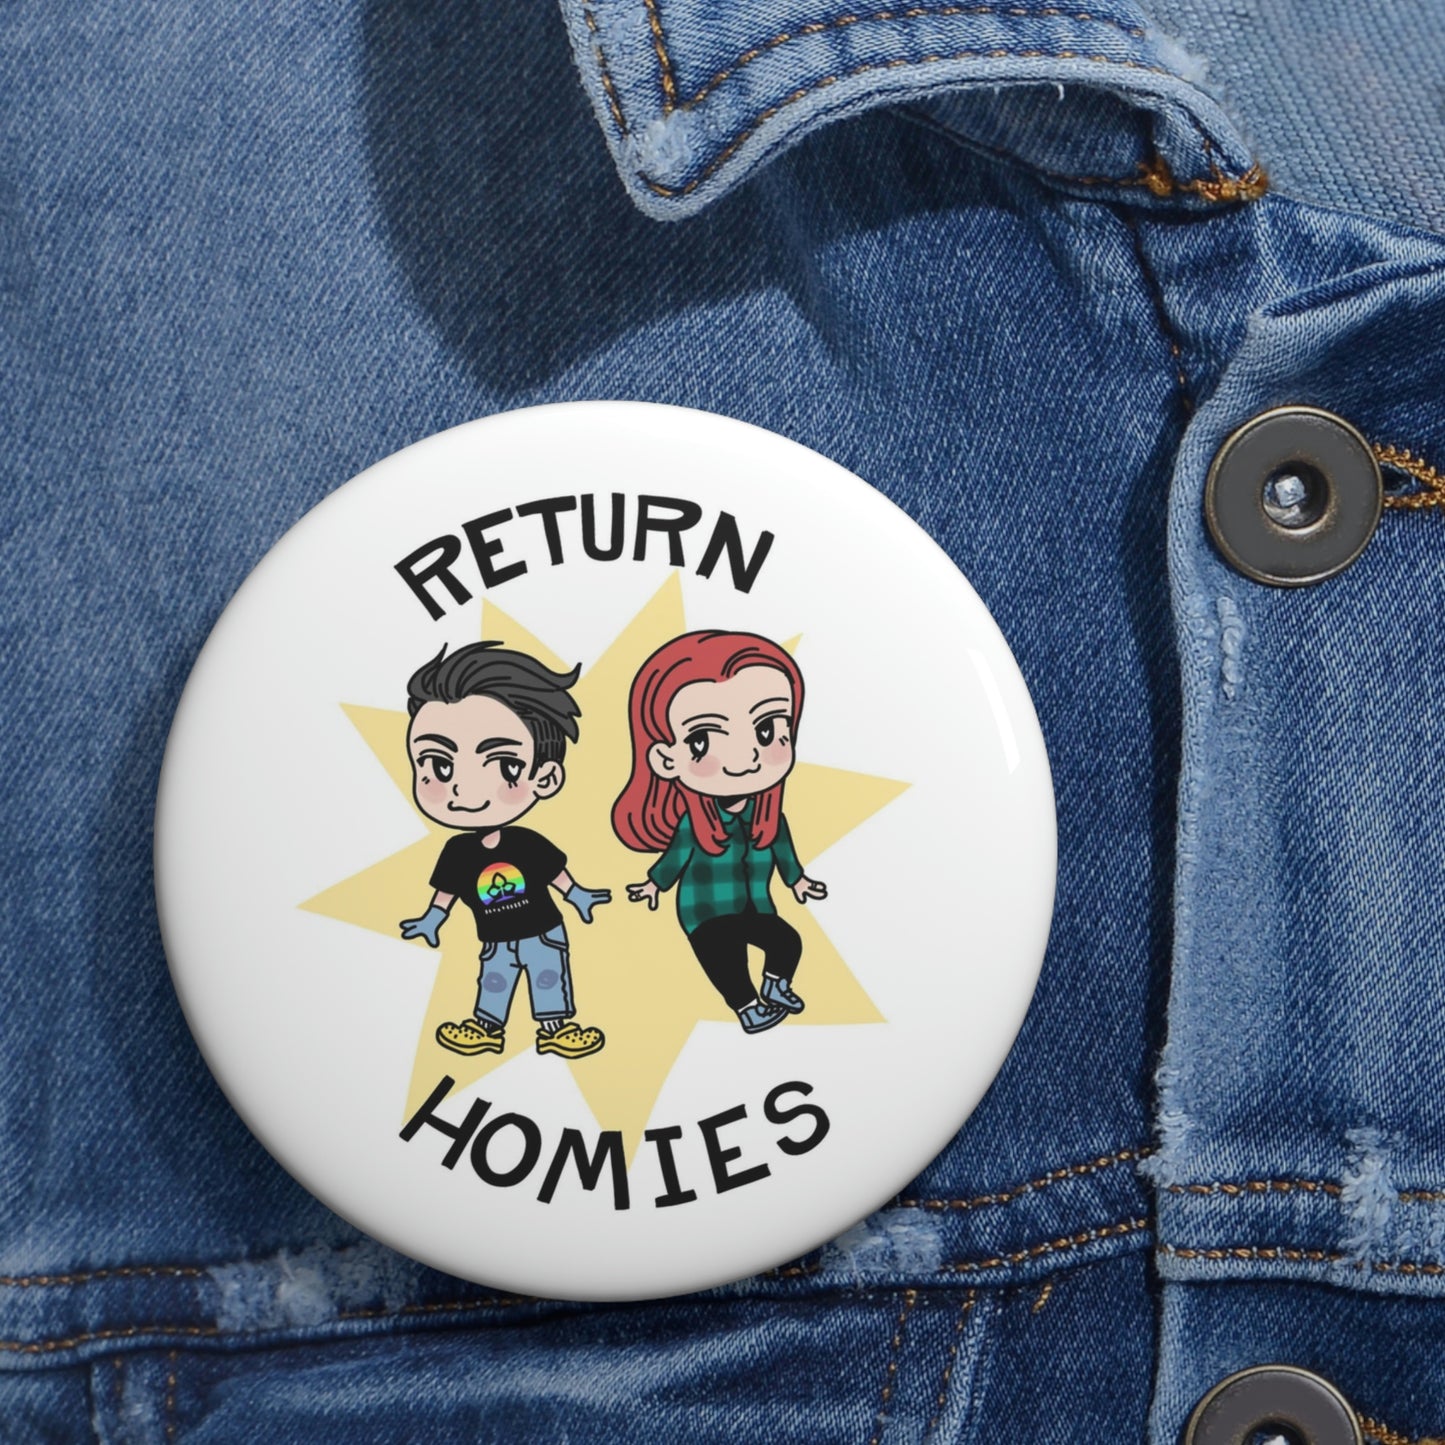 Return Homies Pin Buttons